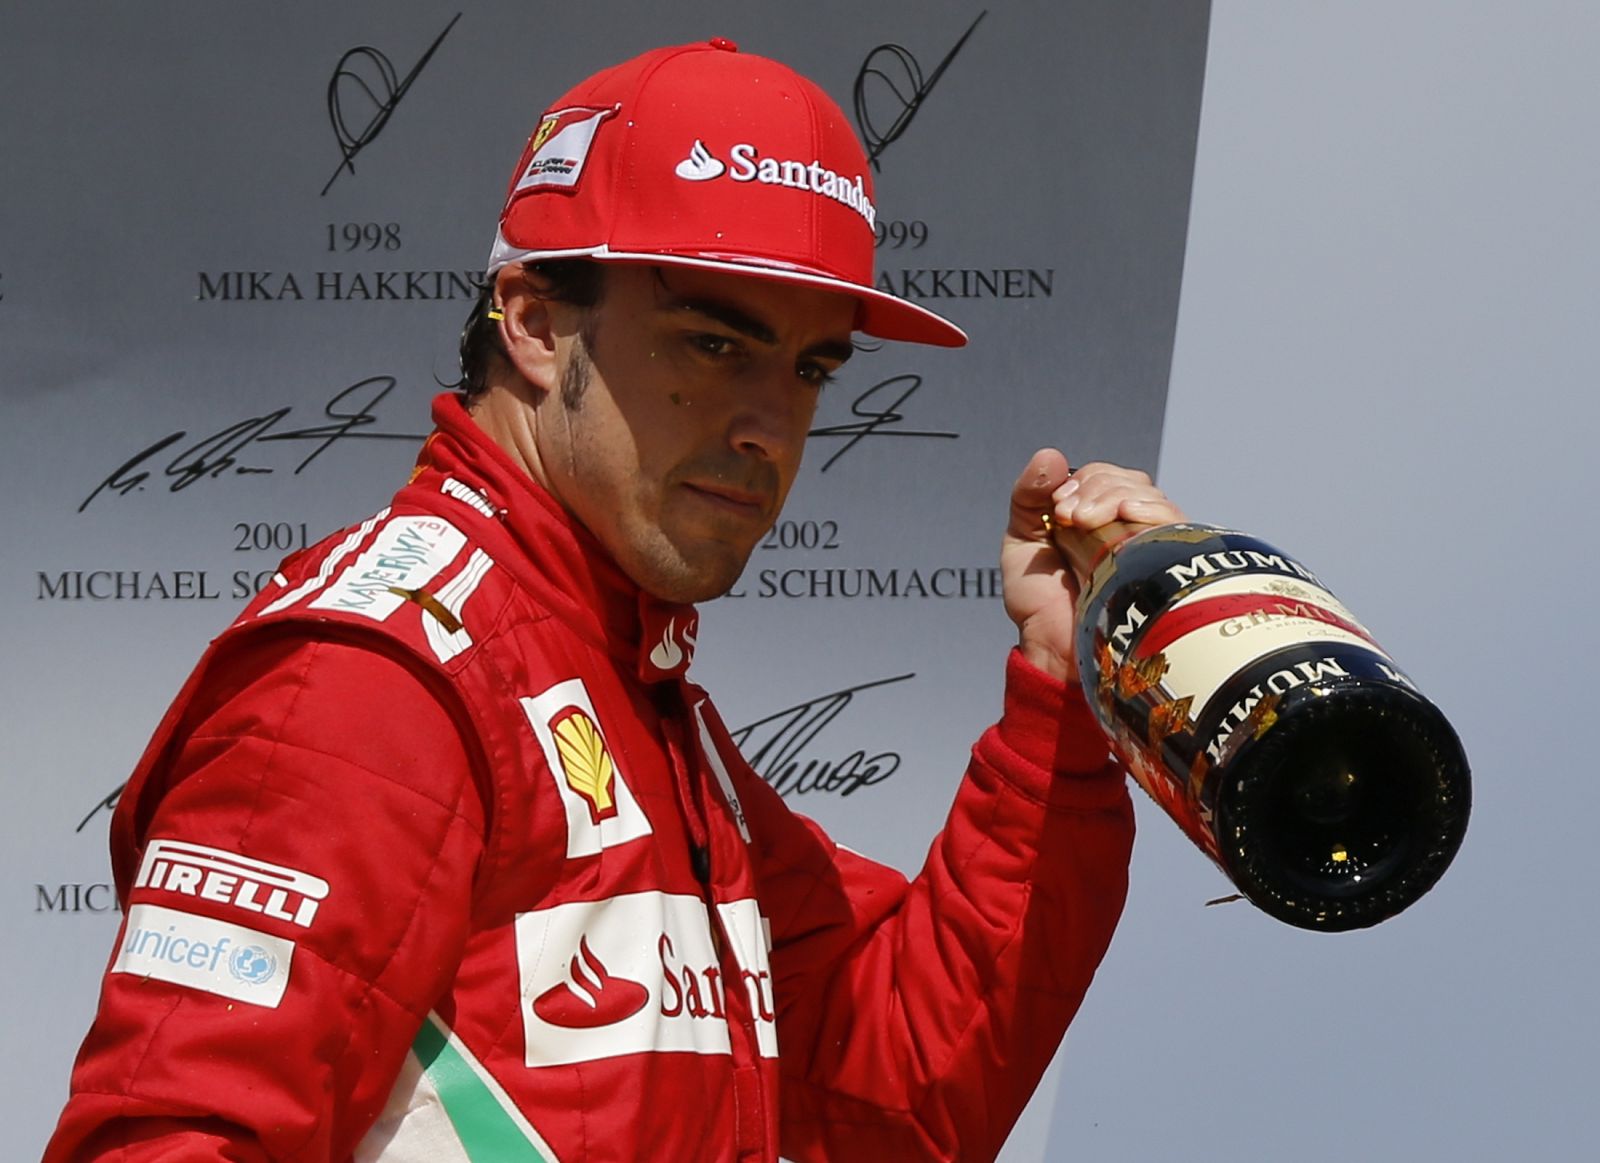 El piloto Fernando Alonso después de ganar en el circuito de Hockenheim.